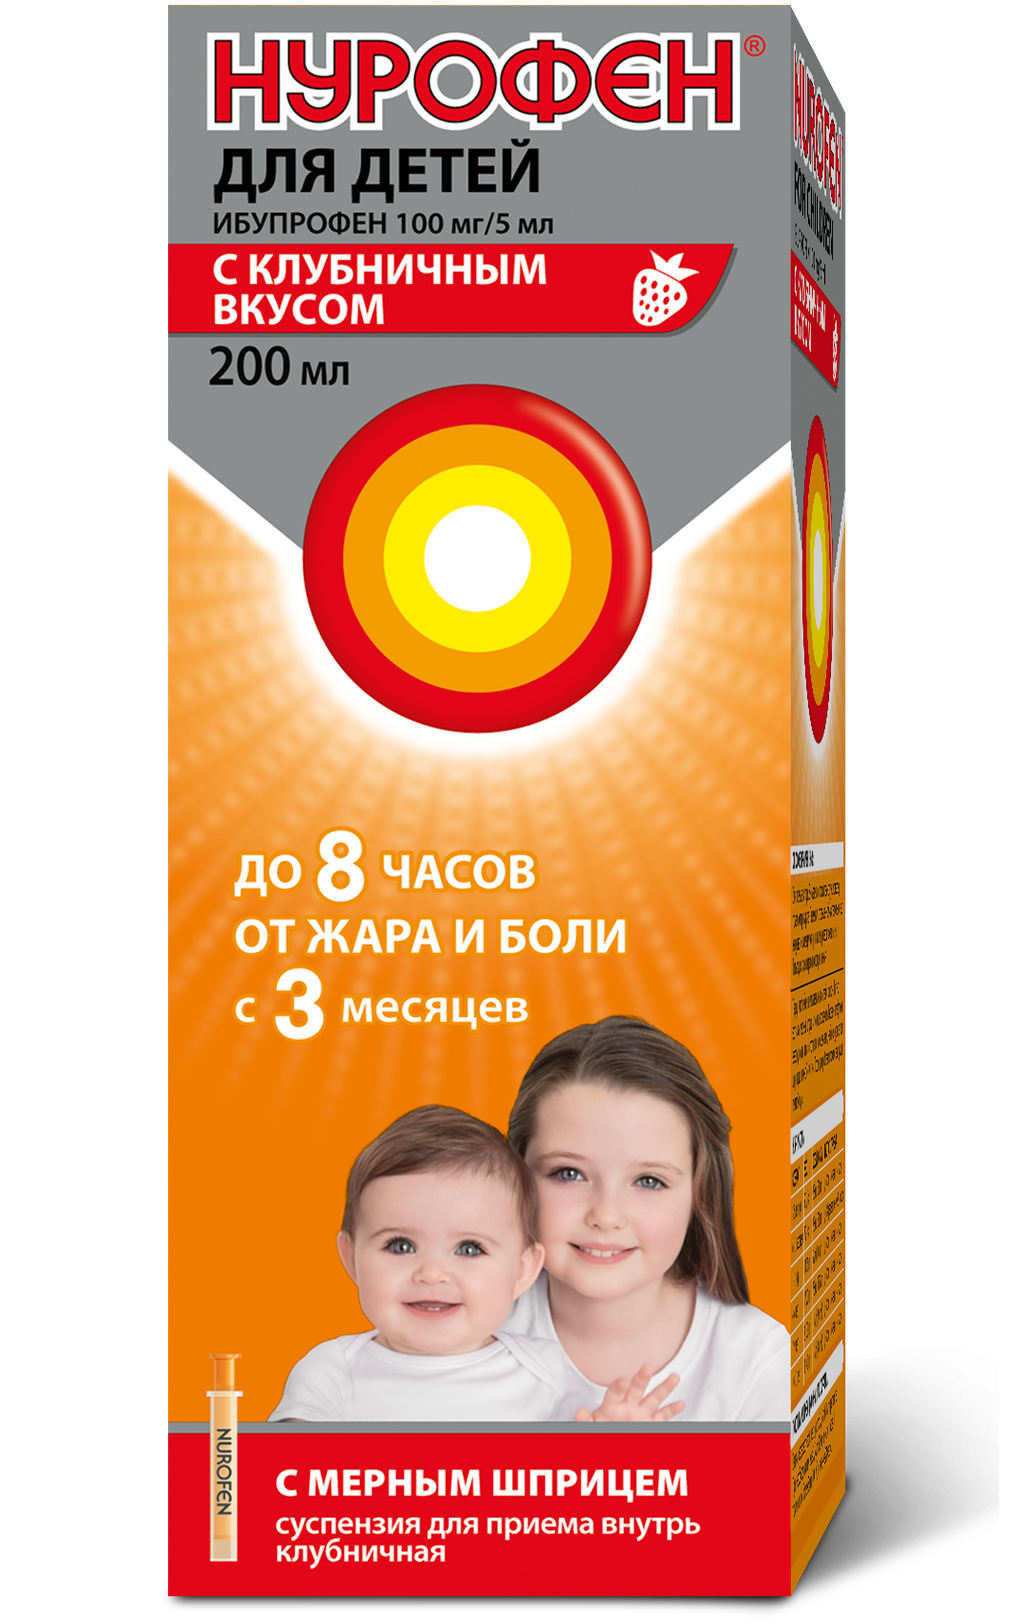 Нурофен для детей, 100 мг/5 мл, суспензия для приема внутрь, клубничный  (ые), 200 мл, 1 шт. купить по цене от 260 руб в Москве, заказать с  доставкой в аптеку, инструкция по применению,